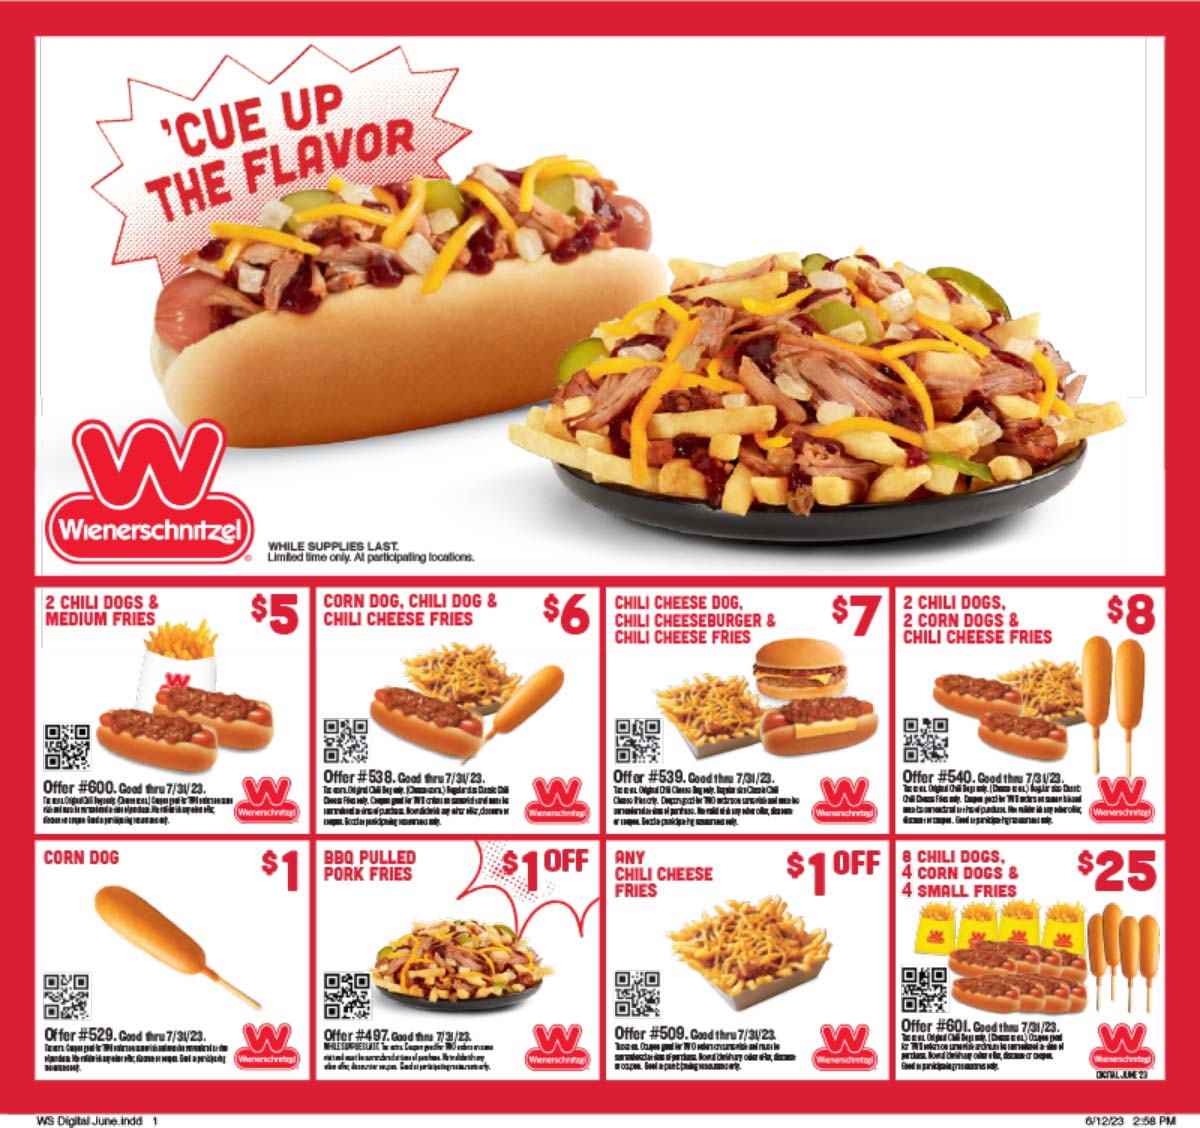 Wienerschnitzel restaurants Coupon  2 chili dogs + fries = $5 & more at Wienerschnitzel #wienerschnitzel 